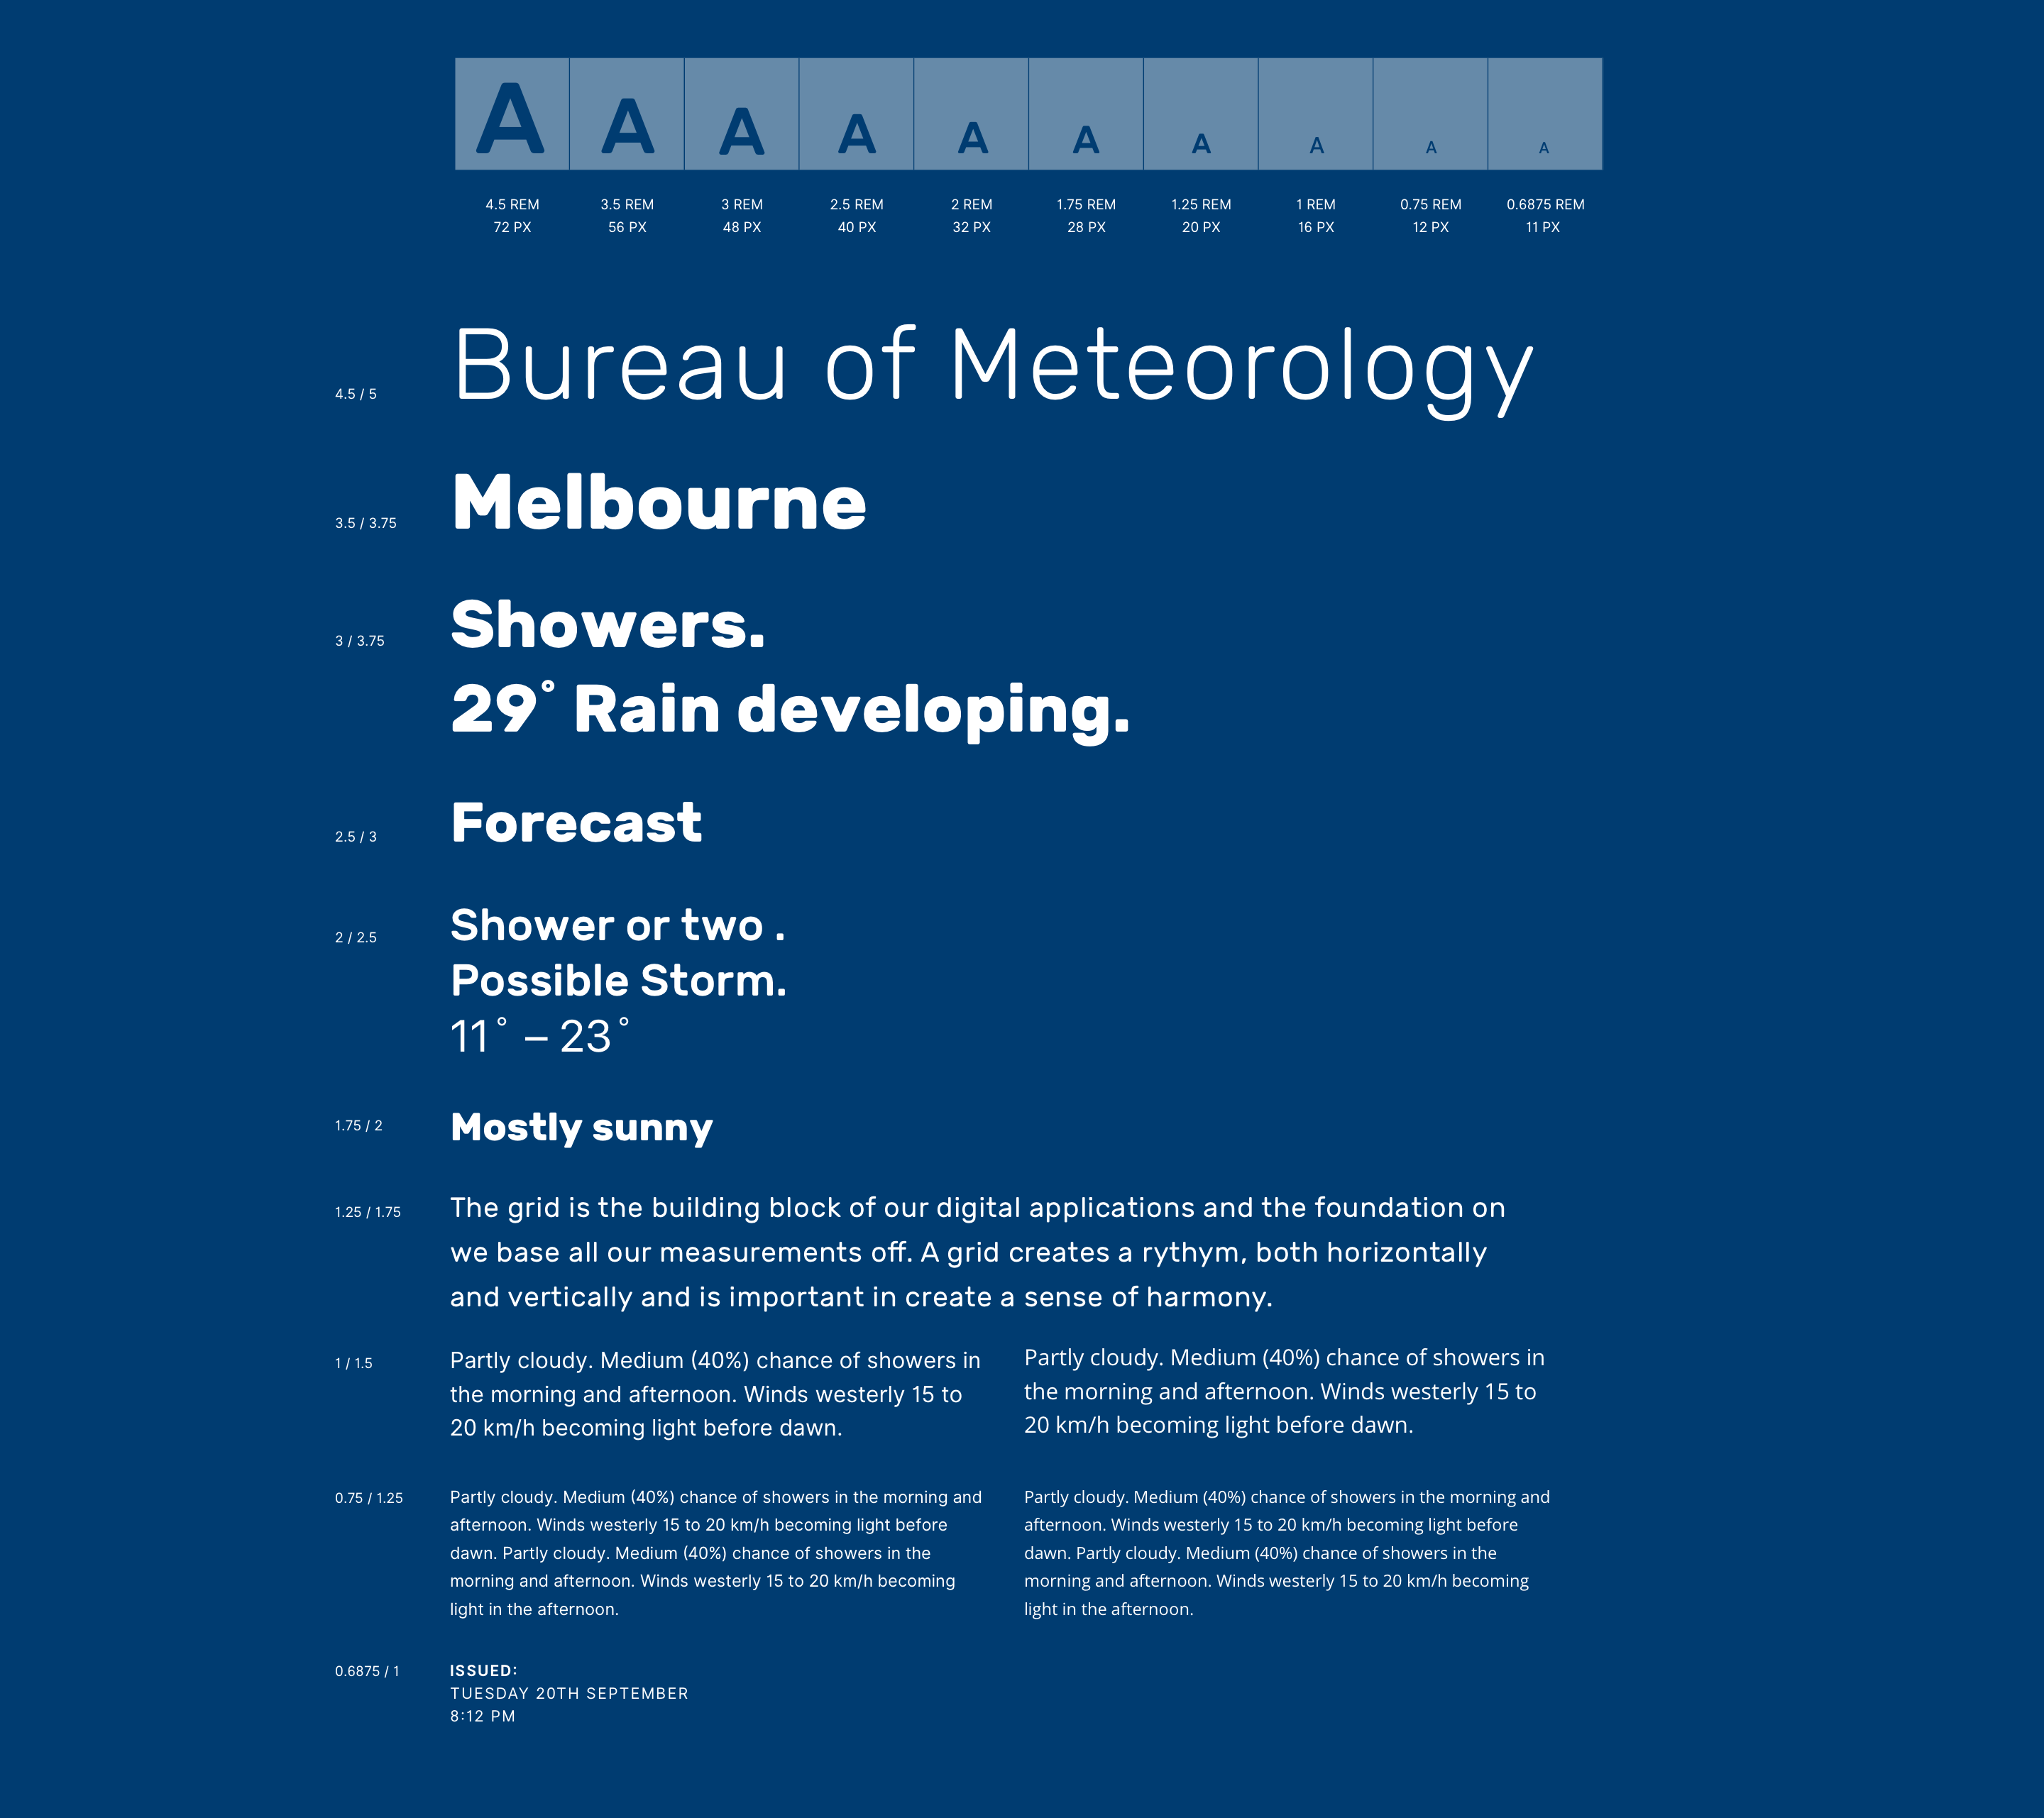 Andrew Dore Bureau of Meteorology